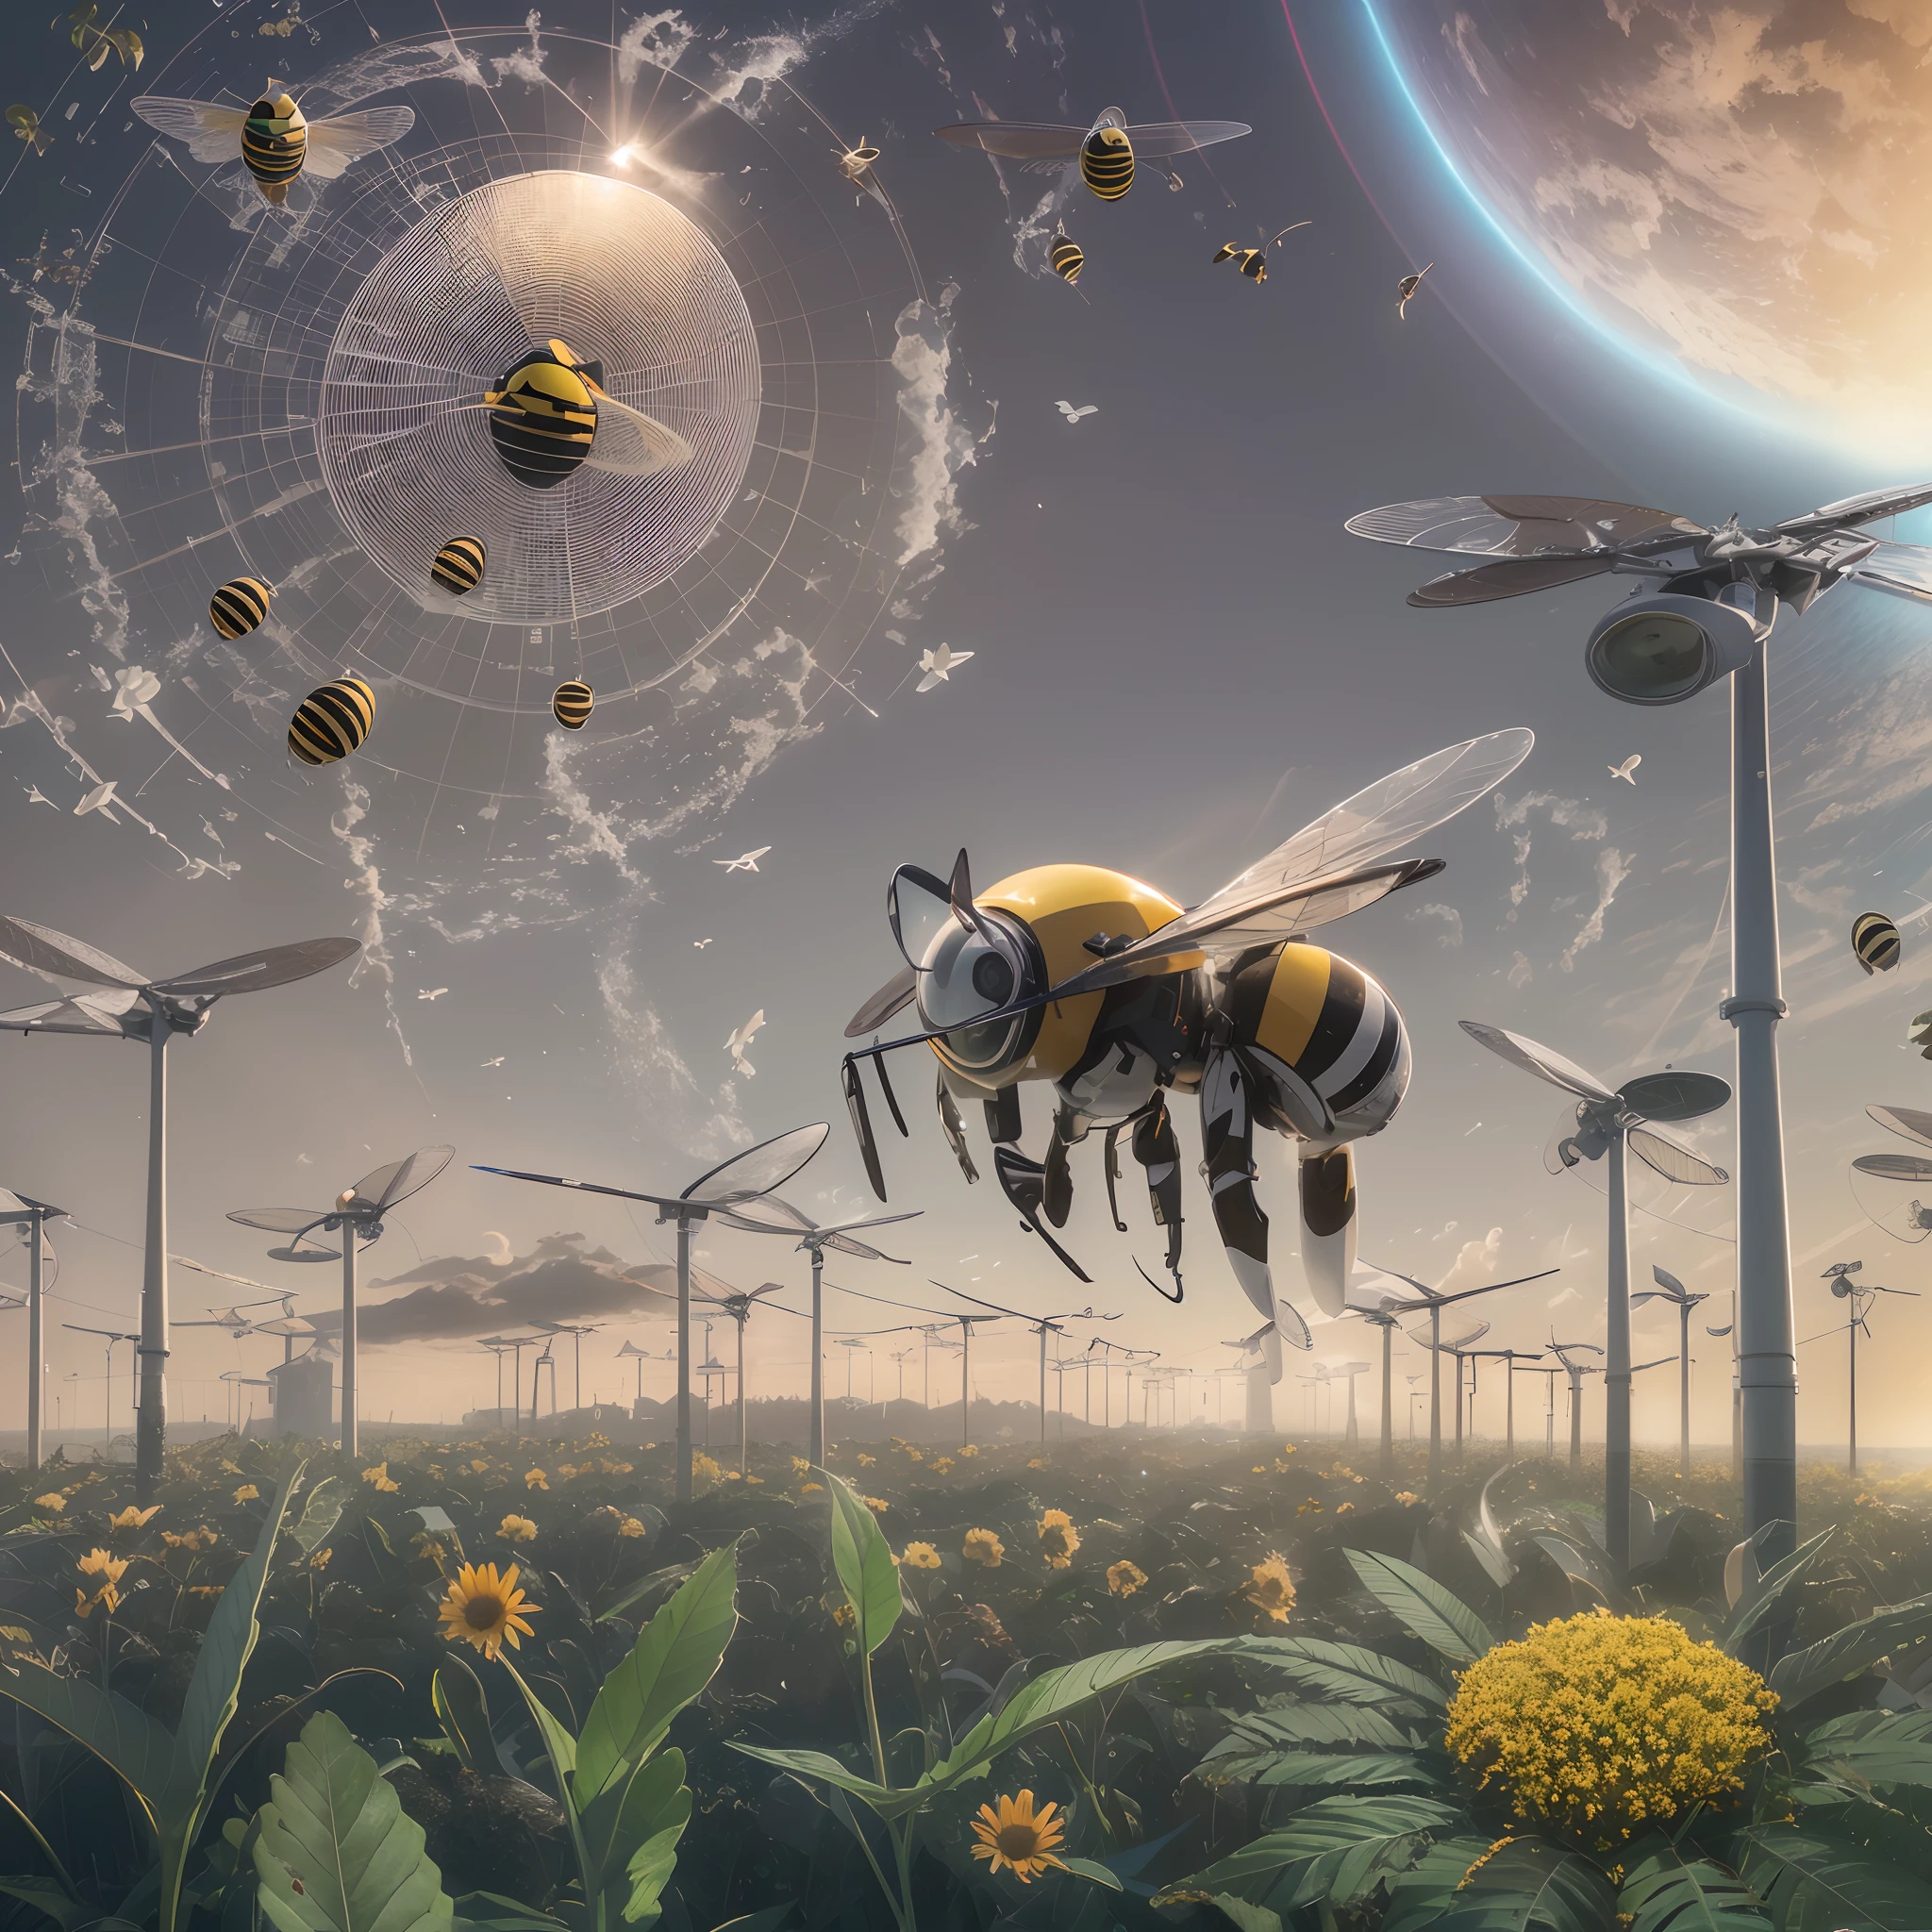 ภาพดาวเคราะห์สีเขียวที่มีแผงโซลาร์เซลล์และมีผึ้งบินอยู่เหนือมัน, cleaning อนาคต, 8k cleaning อนาคต, 16 k cleaning อนาคต, หน้าปก, อนาคต concept art, near อนาคต 2 0 3 0, near อนาคต, ภาพสิ่งแวดล้อม, พลังงานแสงอาทิตย์!!!, ศิลปะแนวคิดด้านสิ่งแวดล้อม, อนาคต, พลังงานแสงอาทิตย์ อนาคต, ศิลปะอย่างเป็นทางการ, พลังงานแสงอาทิตย์, ภาพปก, สวย, คม, โรงภาพยนตร์, ง่ายต่อการแปลงเป็นวิดีโอ,16k, 8k , และใช้มนุษย์ในนั้น --auto